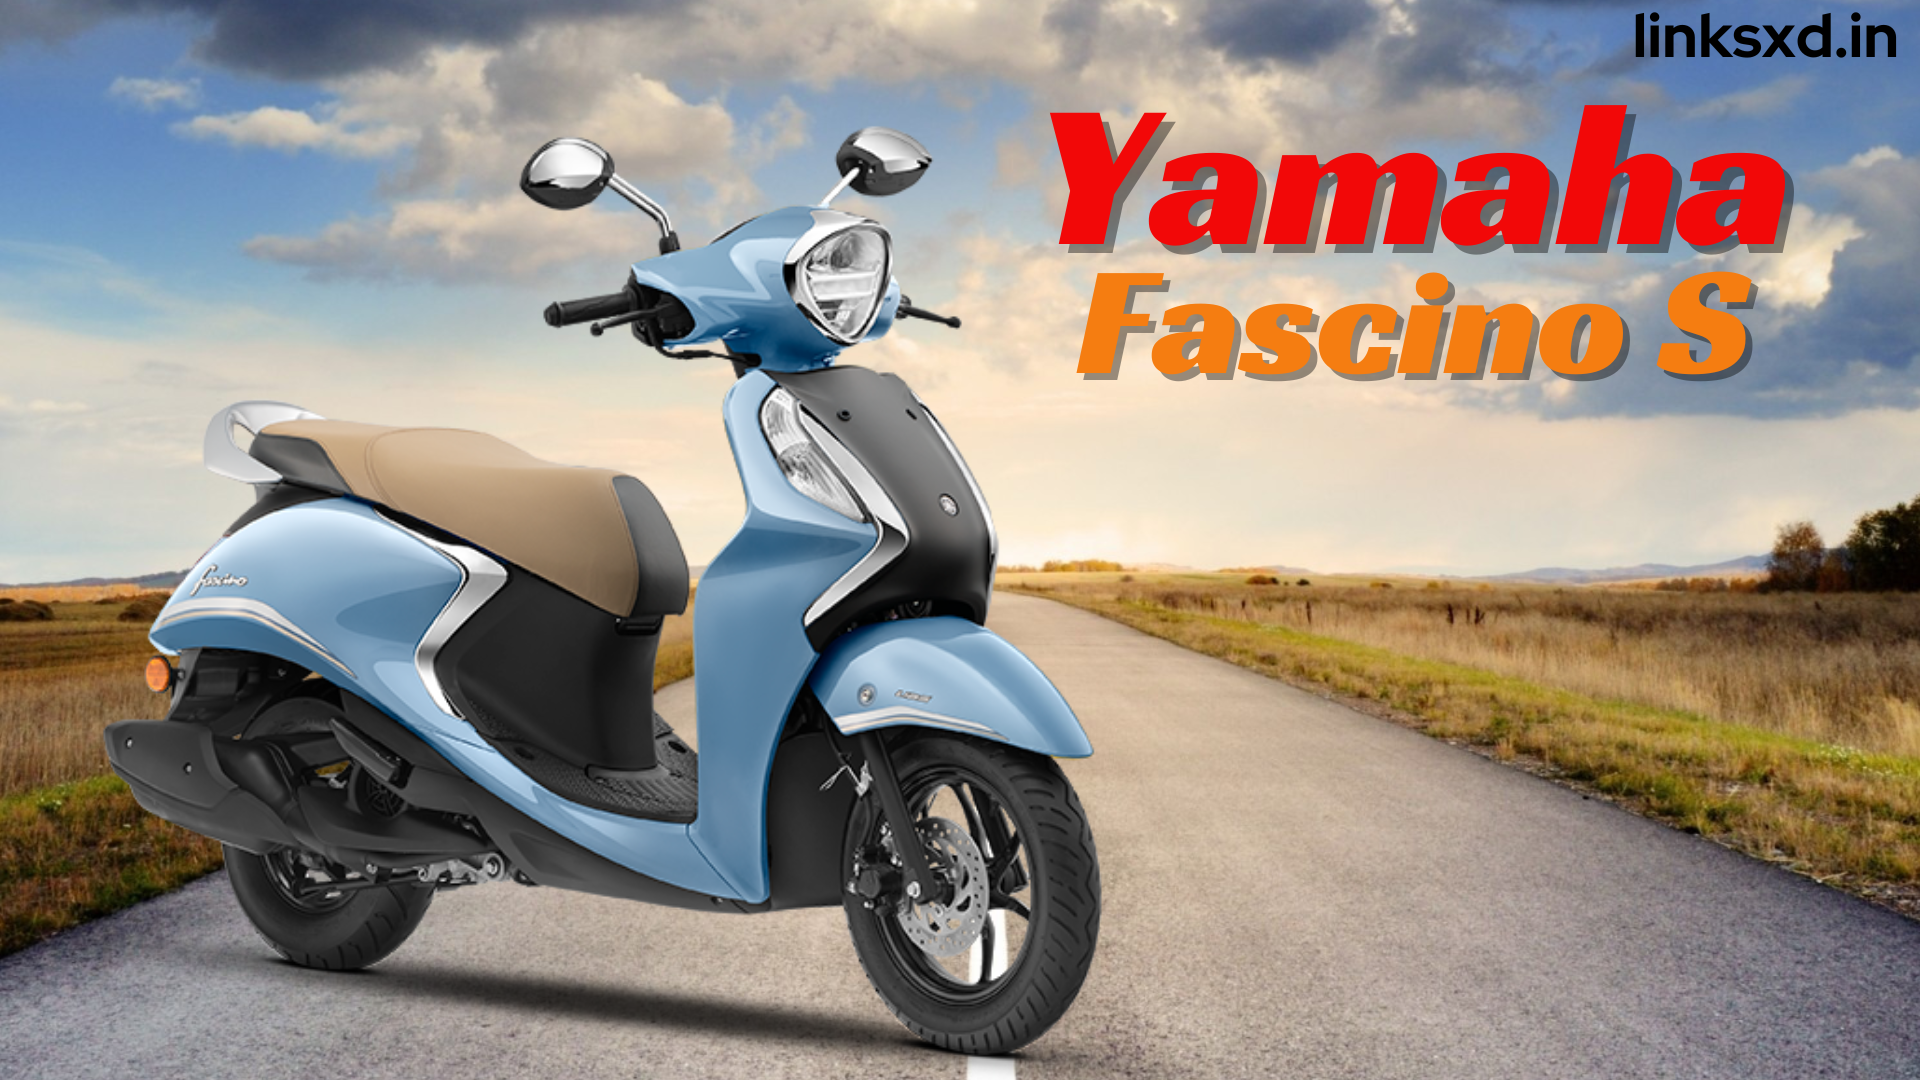 Yamaha Fascino S